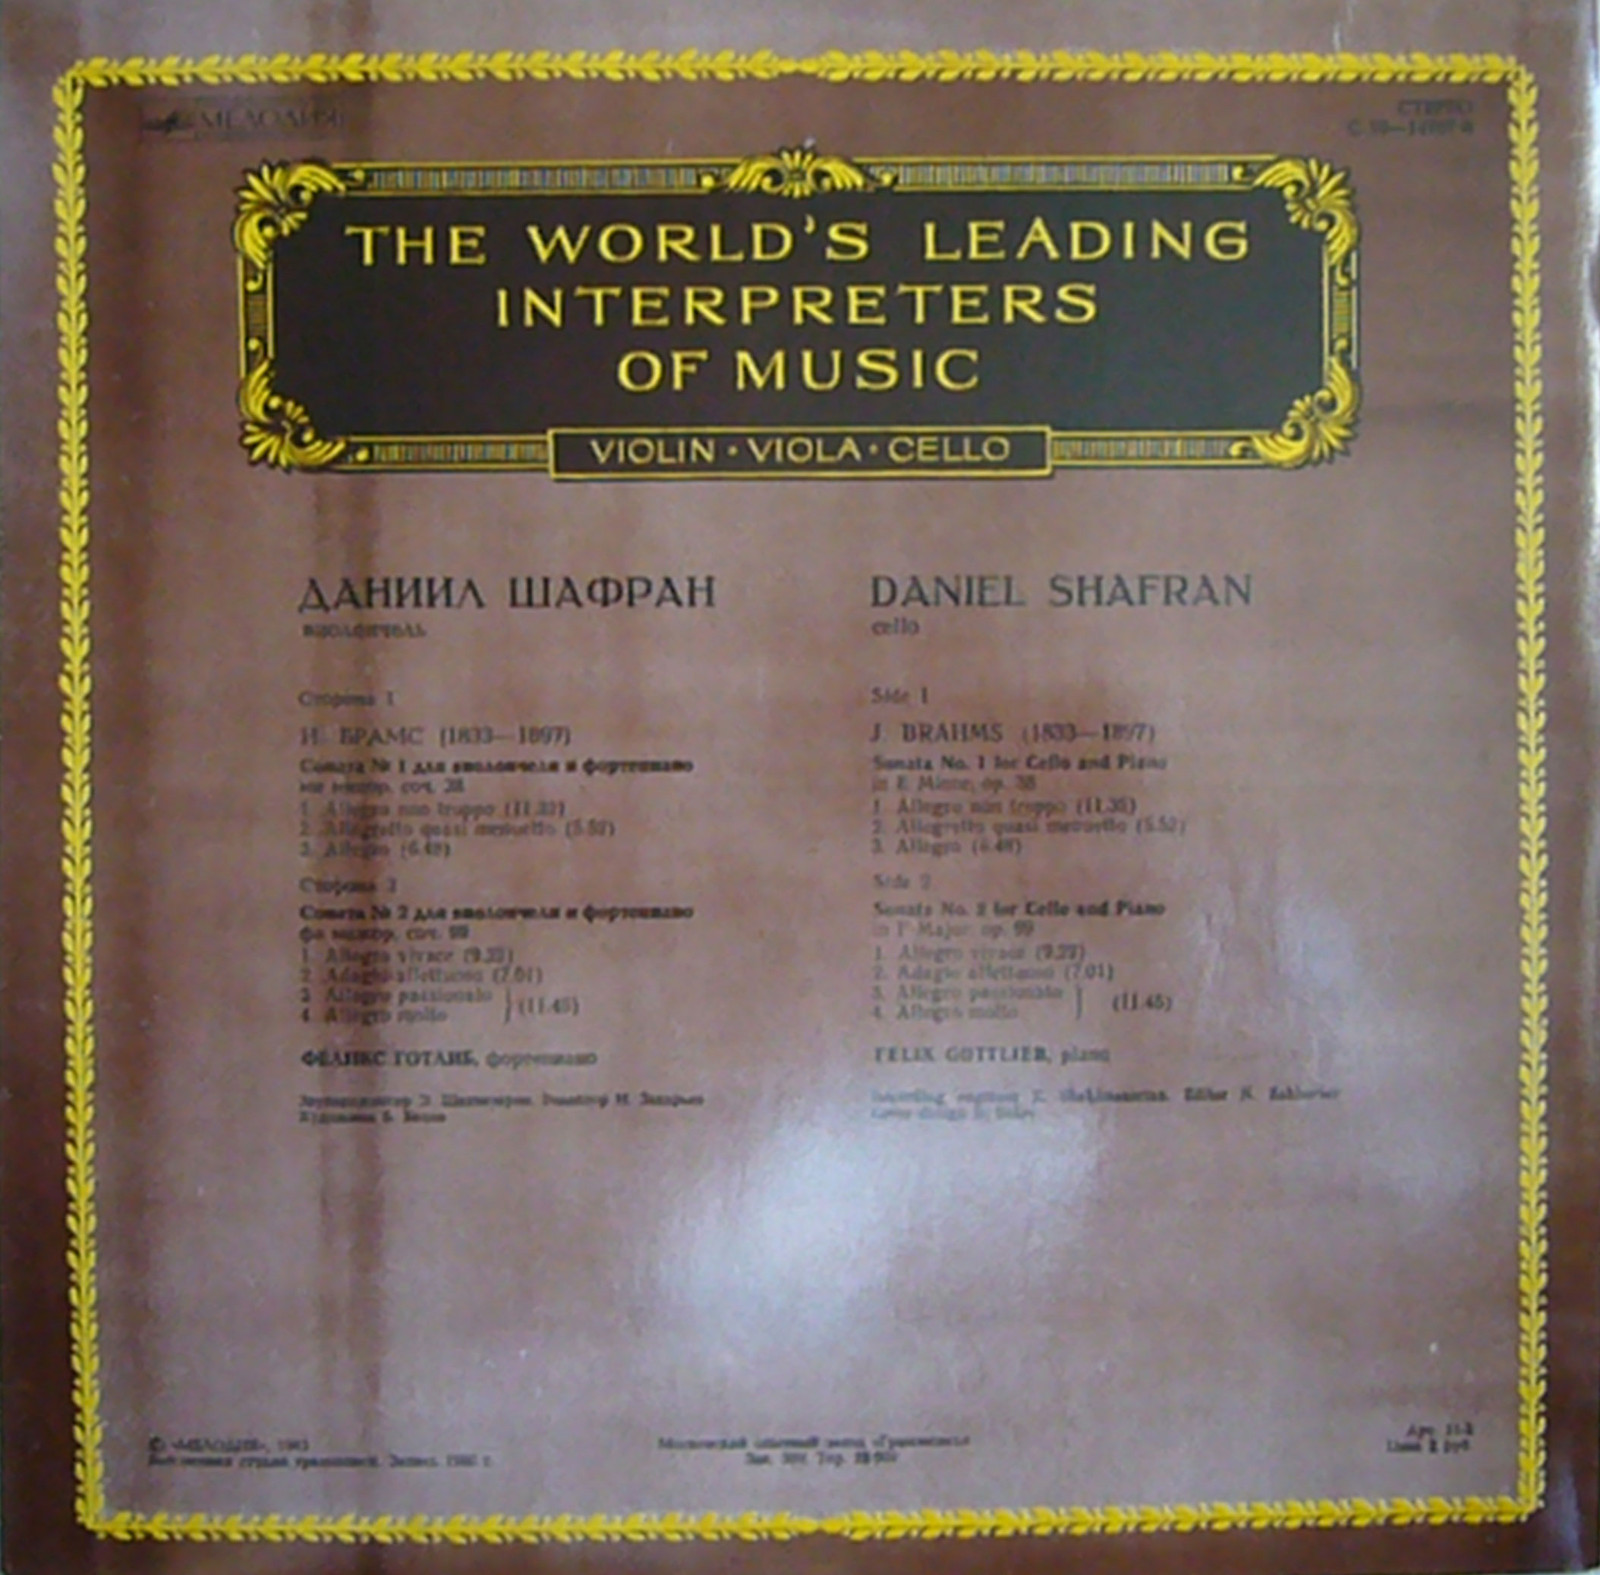 И. БРАМС (1833-1897): Сонаты для виолончели и ф-но (Д. Шафран, Ф. Готлиб)